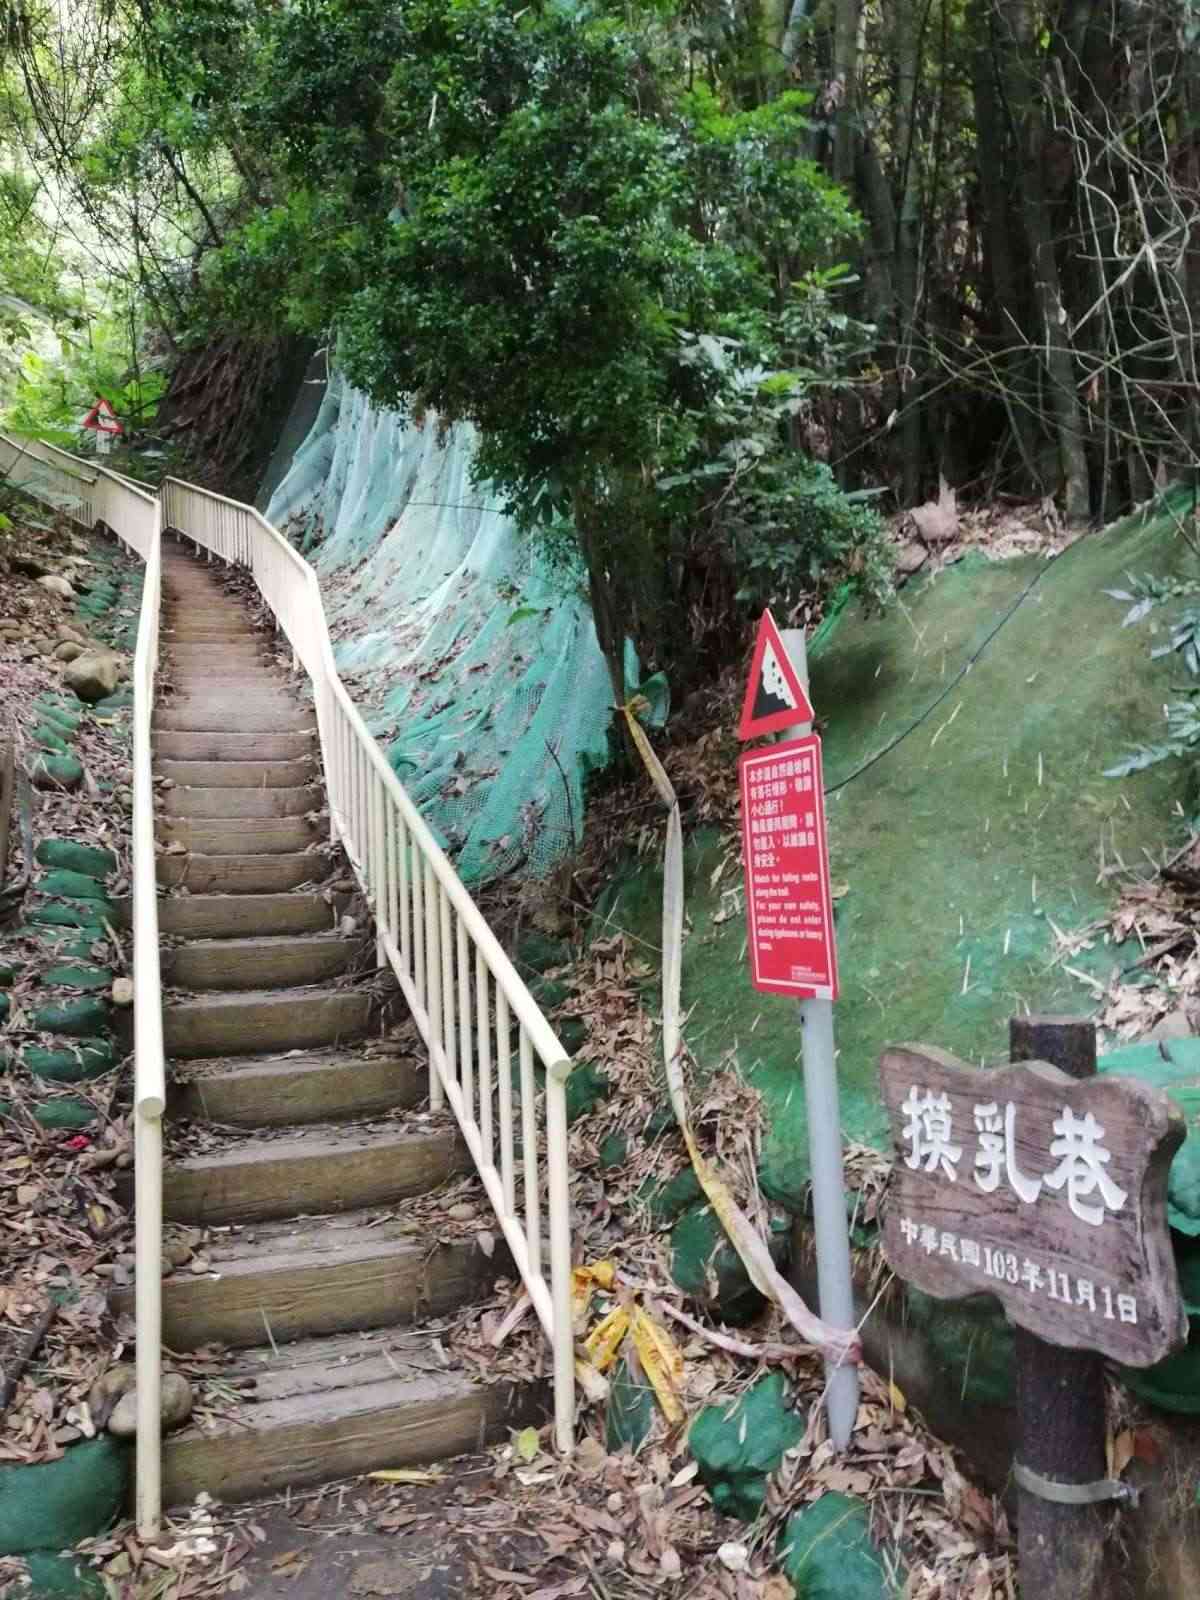 名間坑內坑森林步道/ 攝影者: 林彩惠

(由第三方資訊提供)